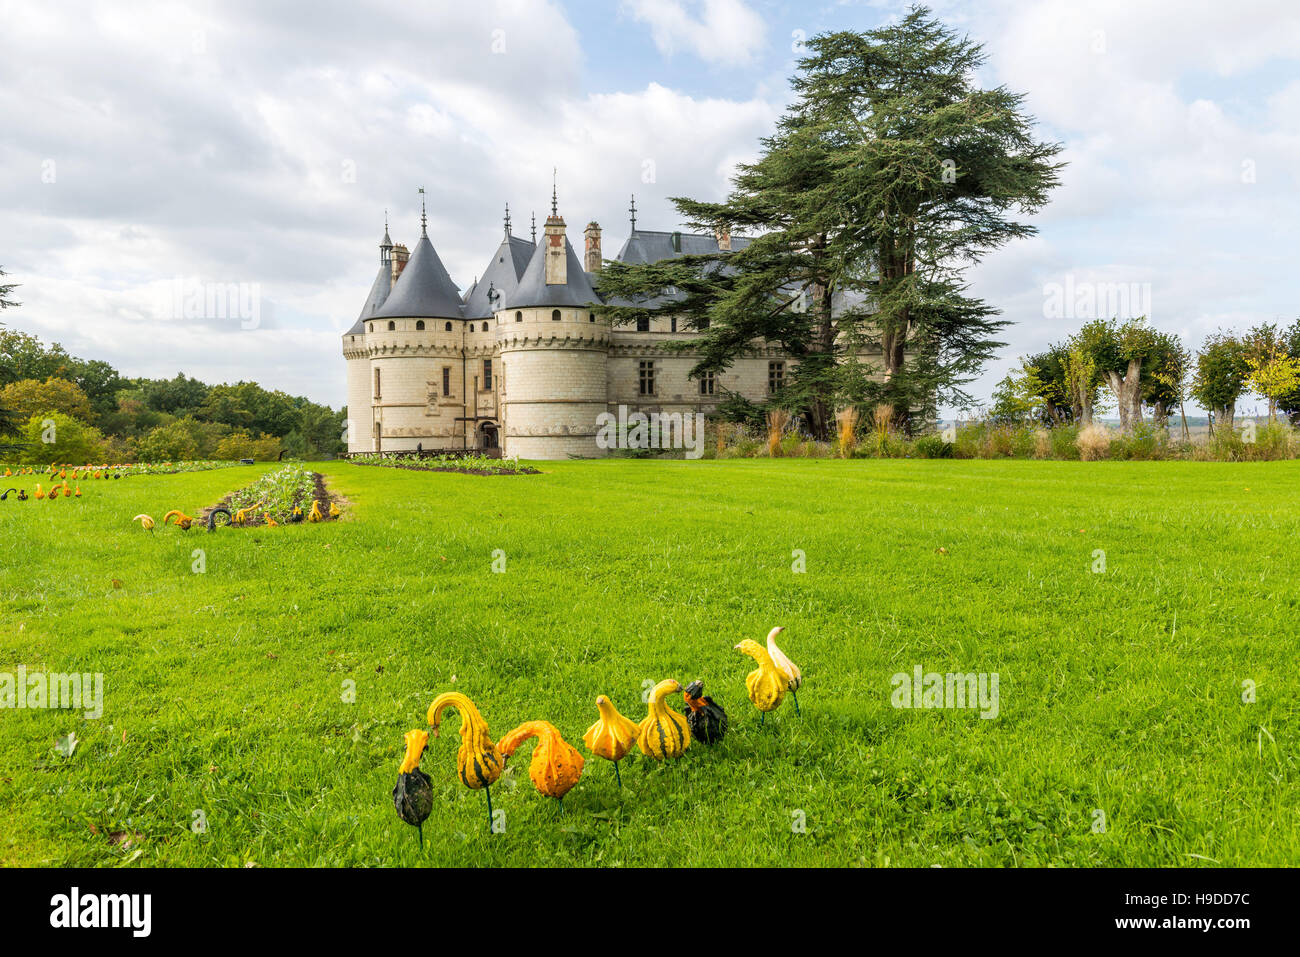 Castle 'château de Chaumont-sur-Loire' (central-western France) and its tree-filled park Stock Photo